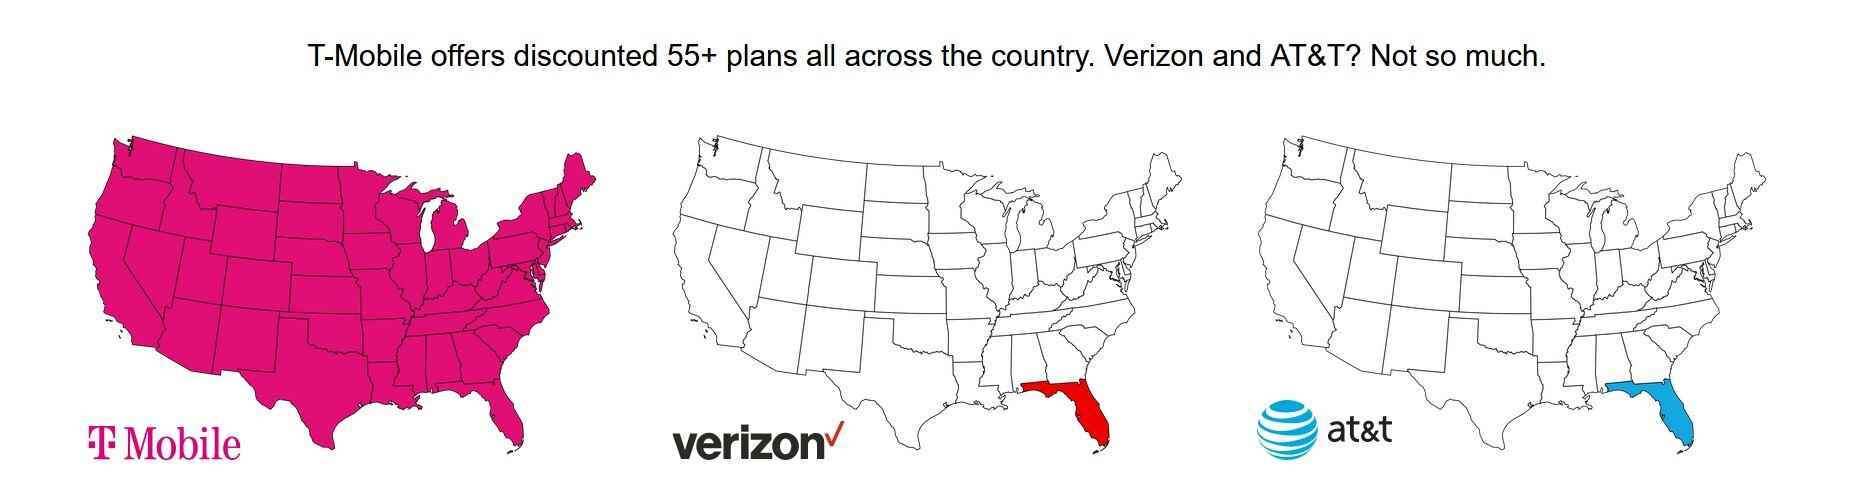 T-Mobile, T-Mobile'dır - T-Mobile, belirli tüketicilere sunulan indirimleri sınırlamak için Verizon ve AT&T'yi arar